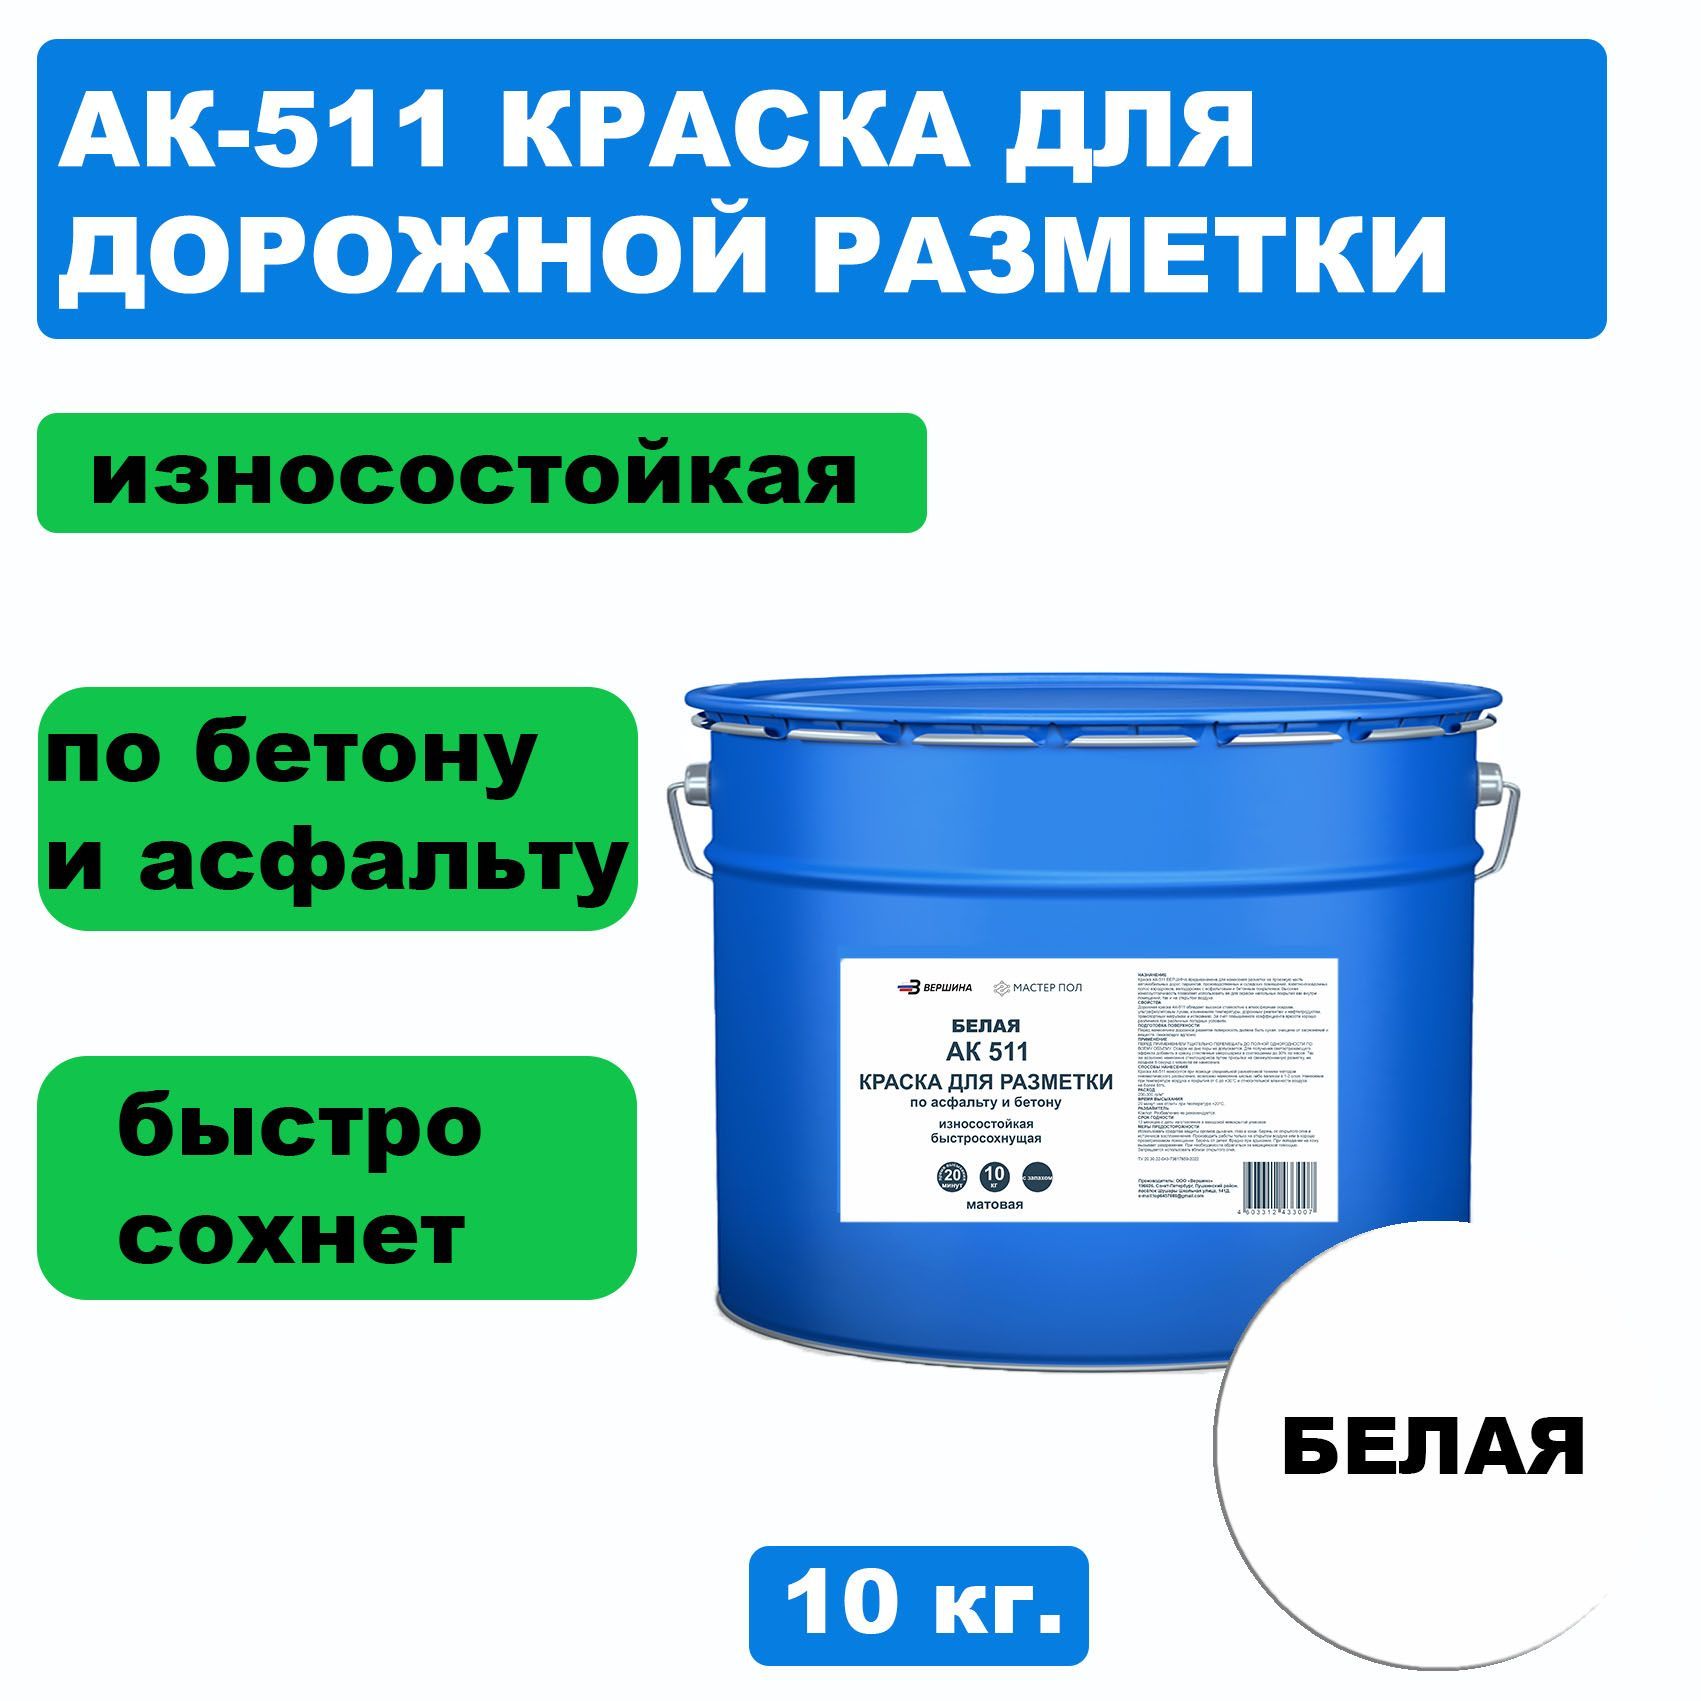 Дорожная краска ВЕРШИНА АК-511 для разметки по асфальту, износостойкая, белая 10кг